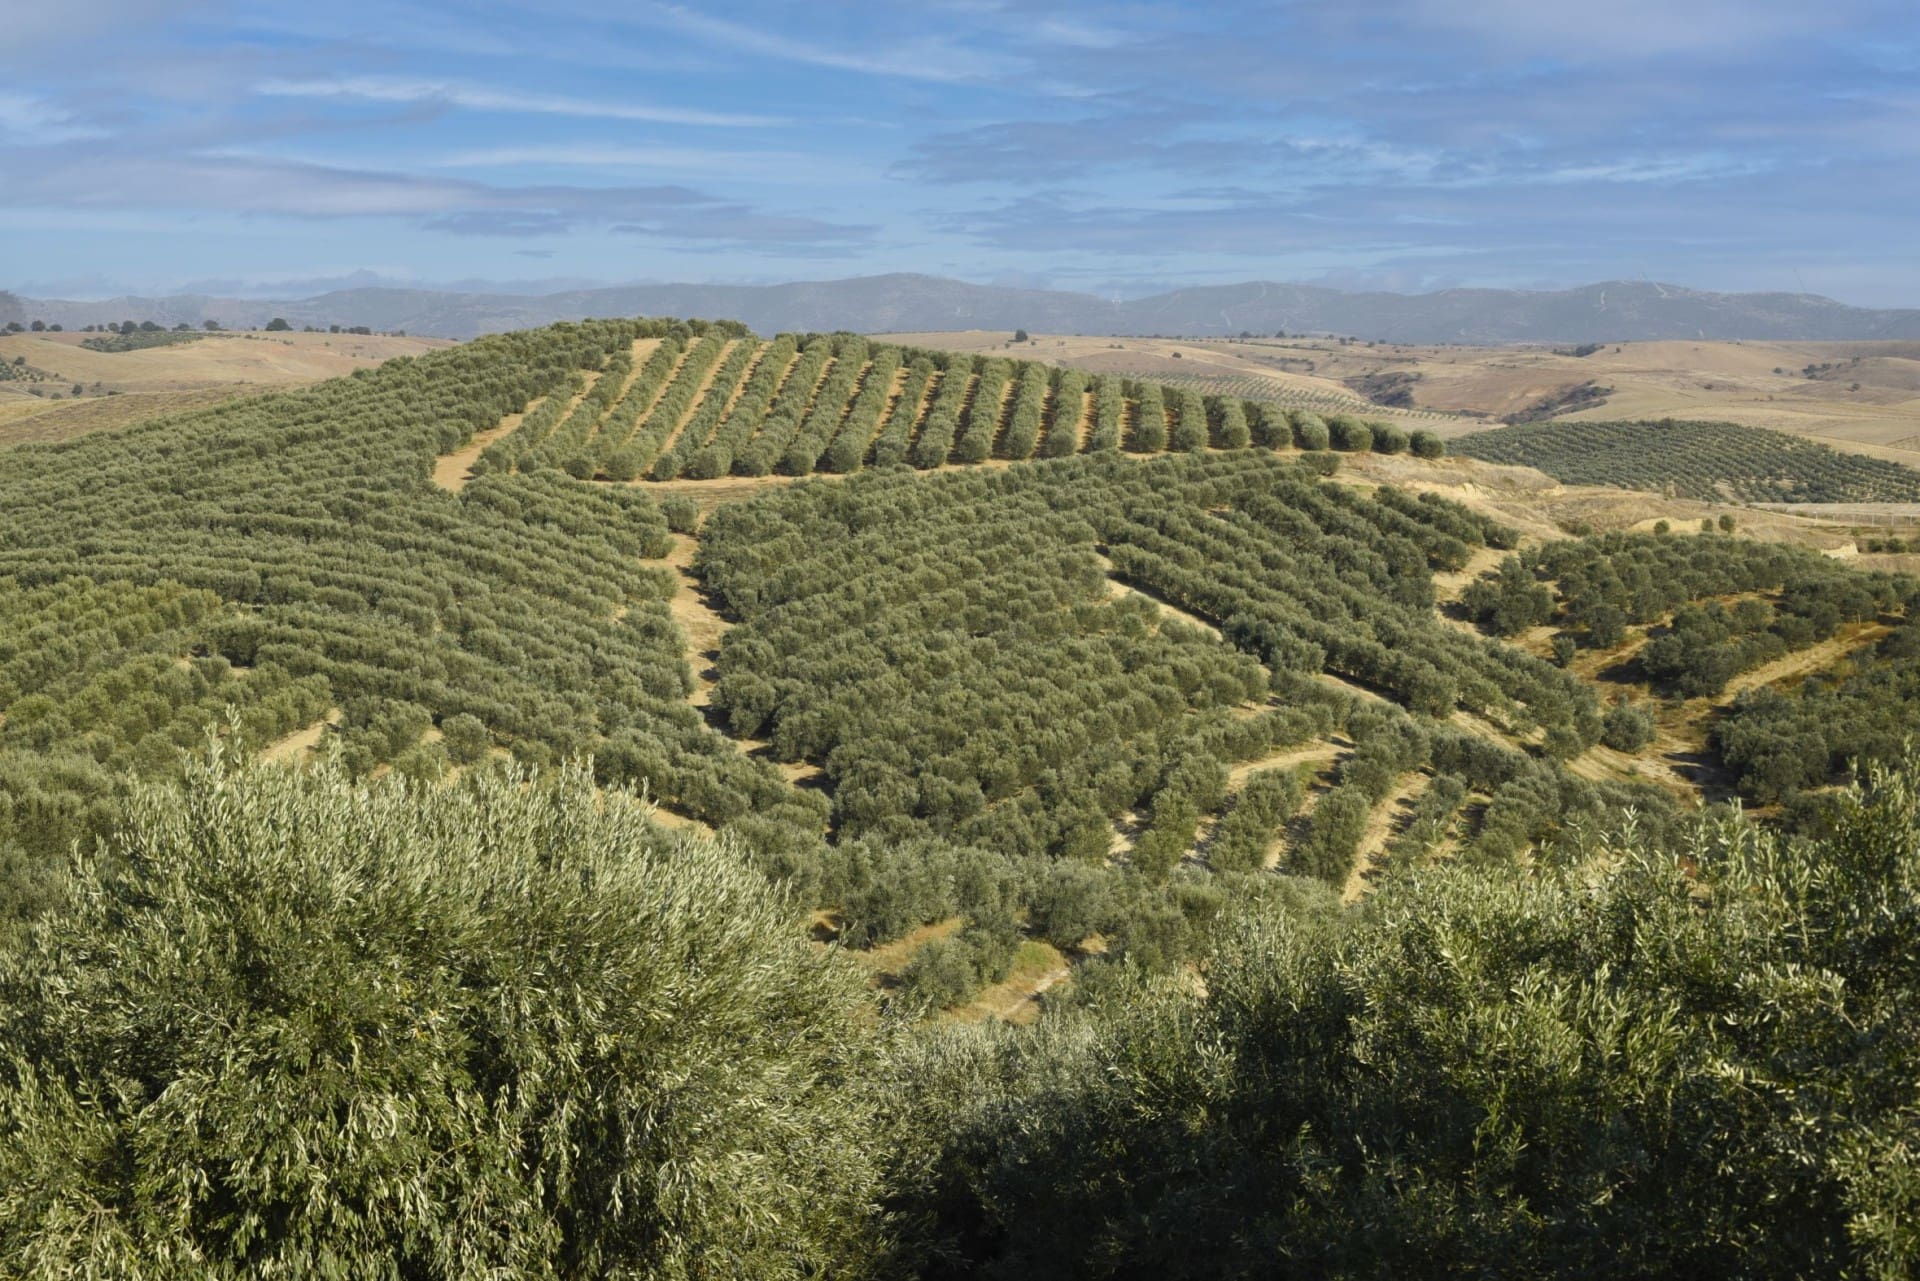 Африка-Ближний-Восток-лучшие-конкурсы-оливкового-масла-производство-турецкие-производители-достигают-новых-высот-в-мире-конкуренция-оливковое-масло-время